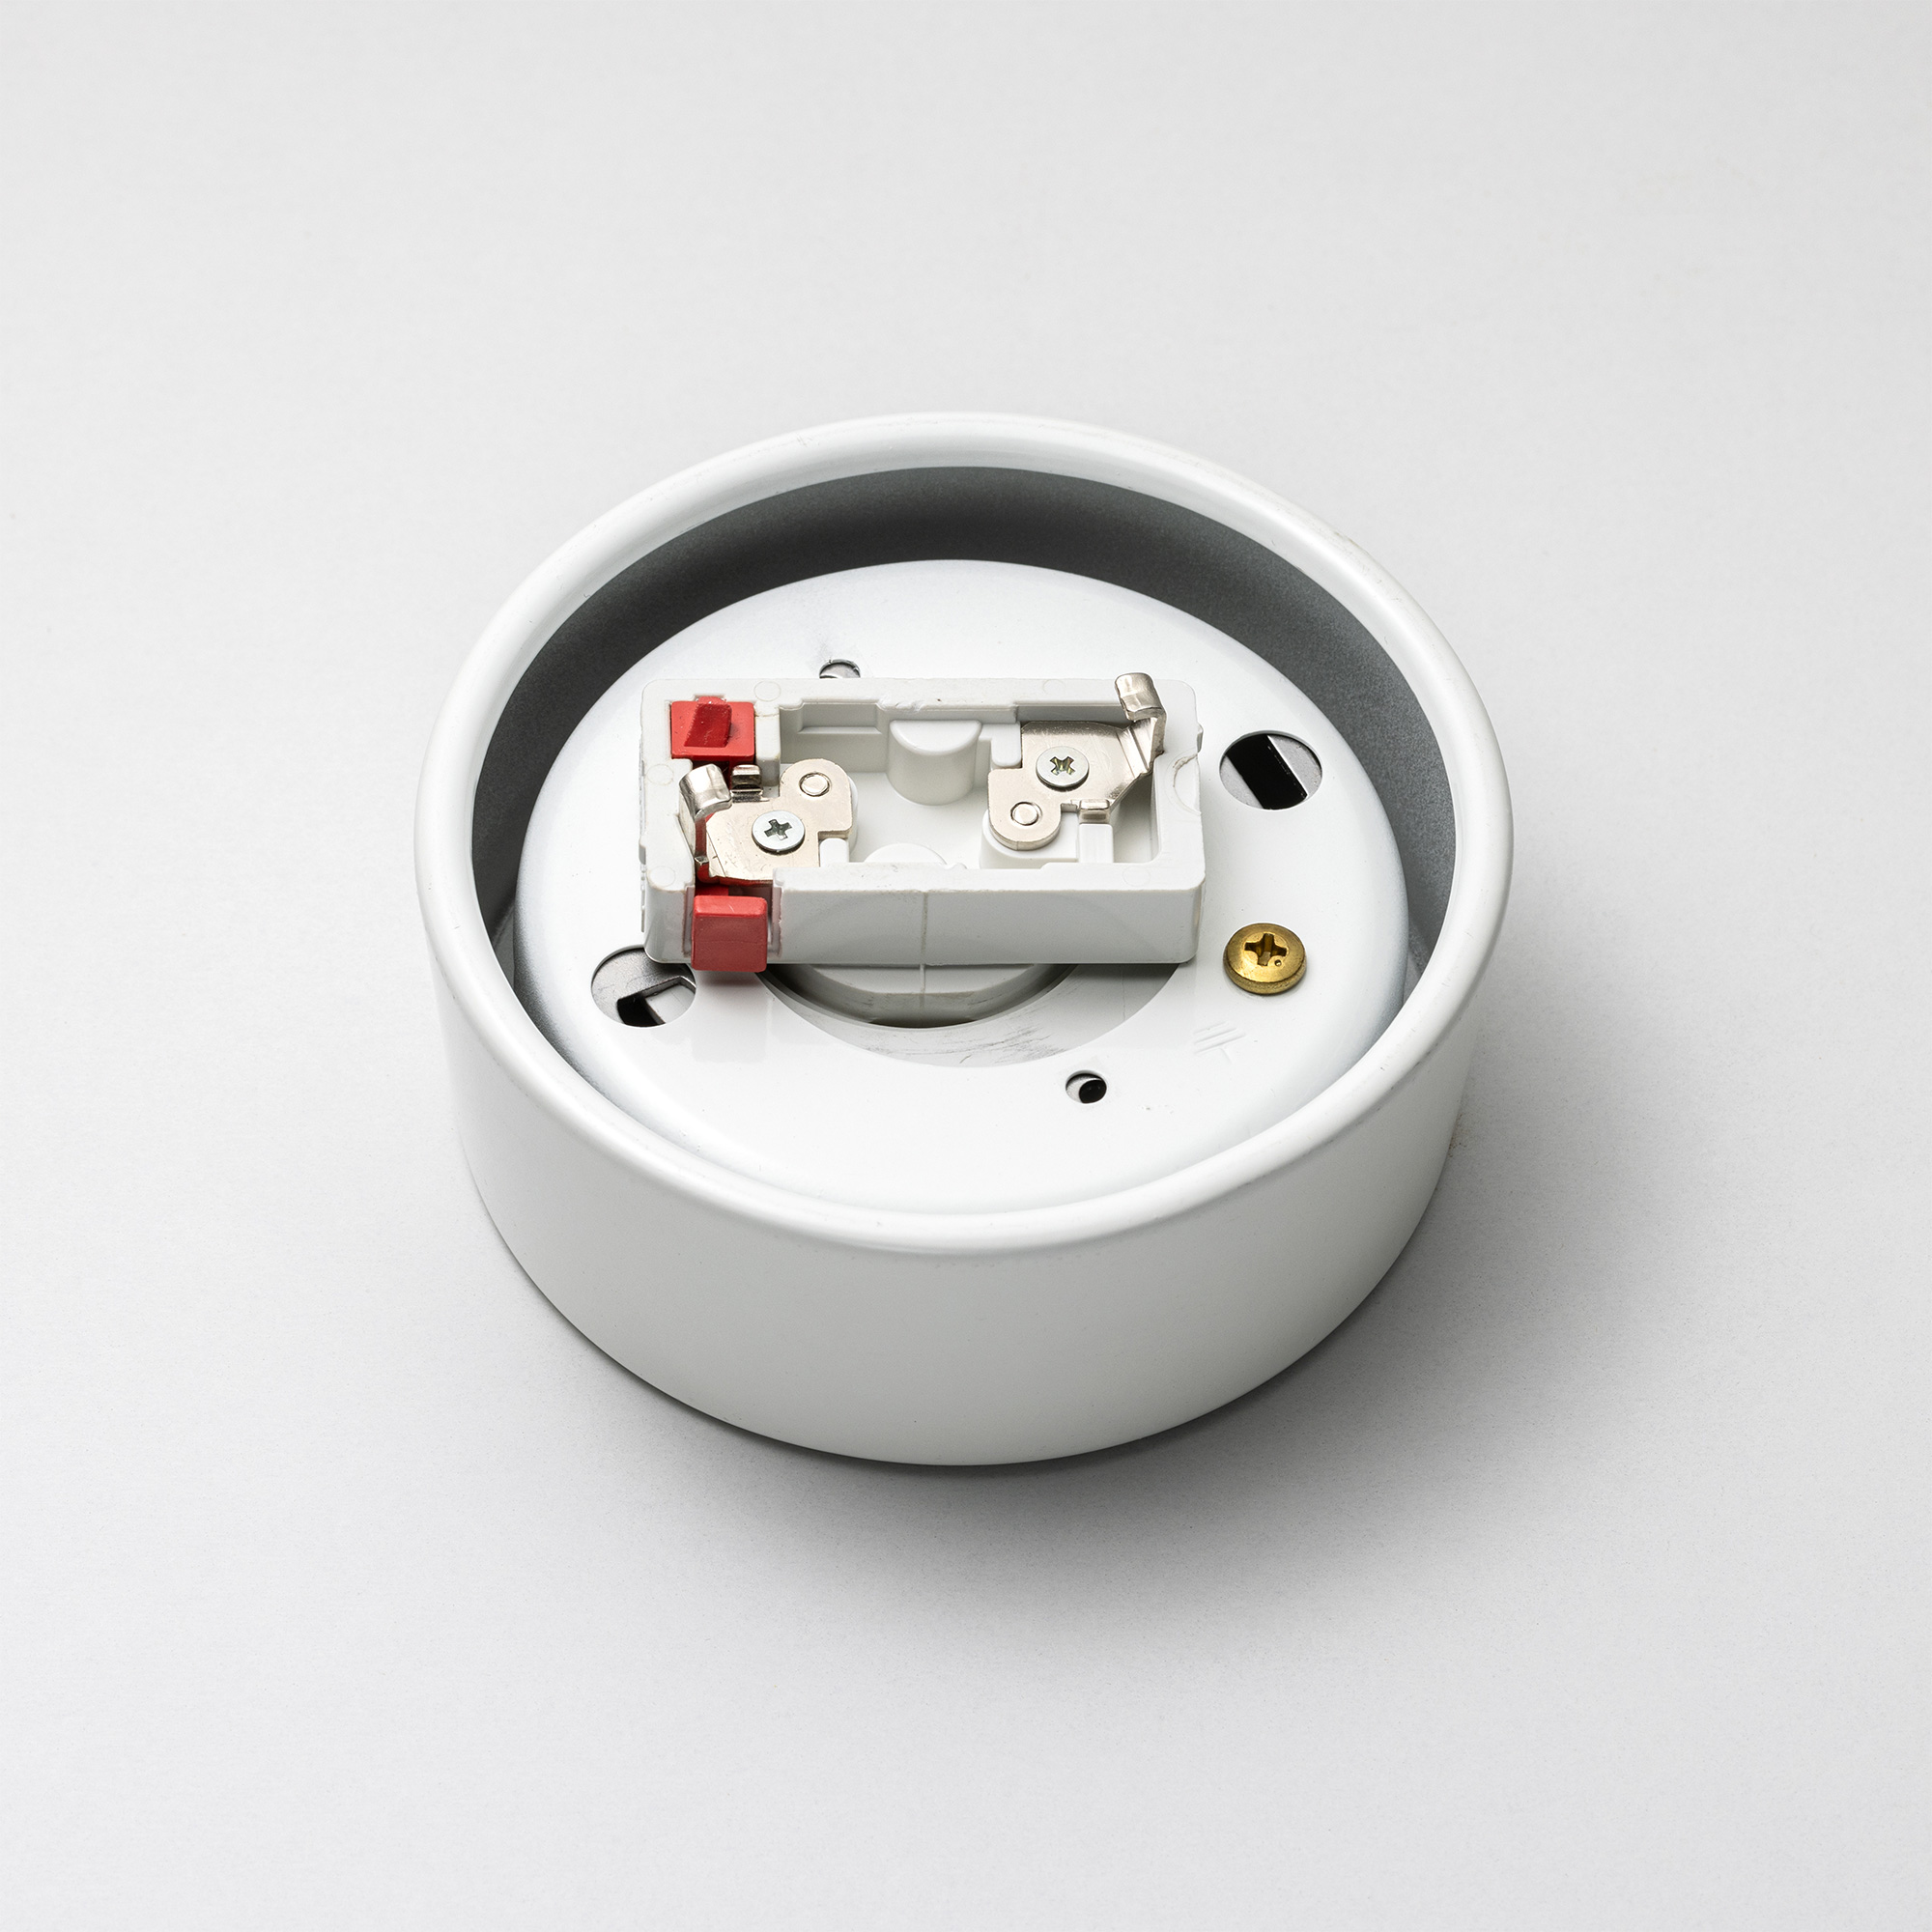 メタルラウンジライト 真鍮 乳白ボール（引掛） LT-PD018-06-G141 ソケットホルダーのシーリングキャップ側。赤い部分が取り外しボタンです。